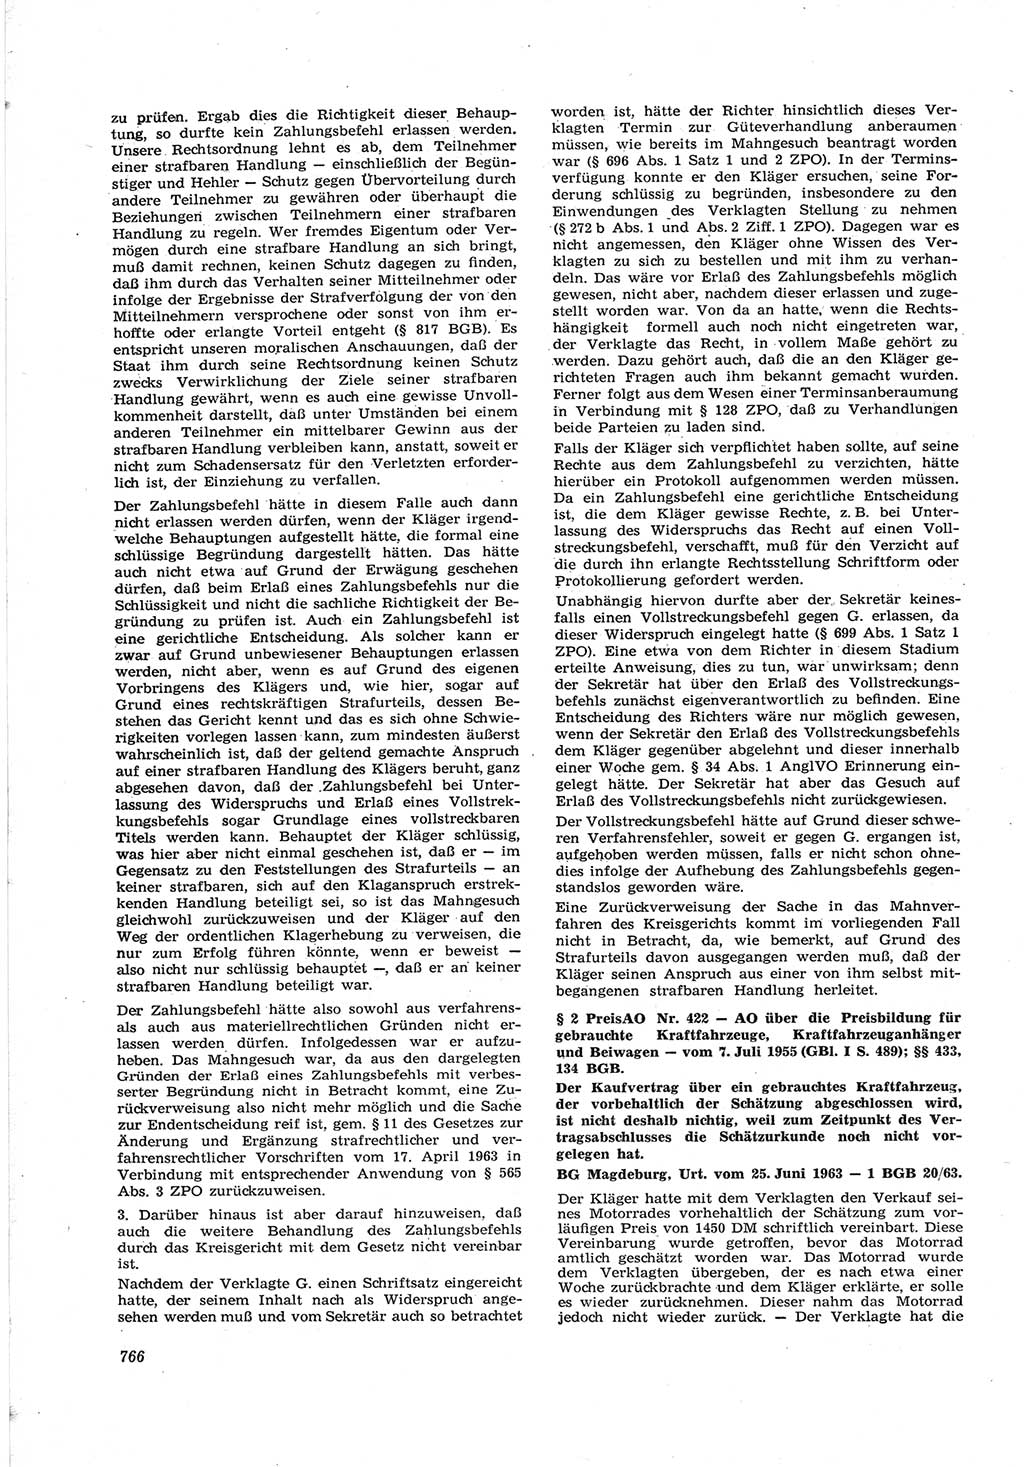 Neue Justiz (NJ), Zeitschrift für Recht und Rechtswissenschaft [Deutsche Demokratische Republik (DDR)], 17. Jahrgang 1963, Seite 766 (NJ DDR 1963, S. 766)